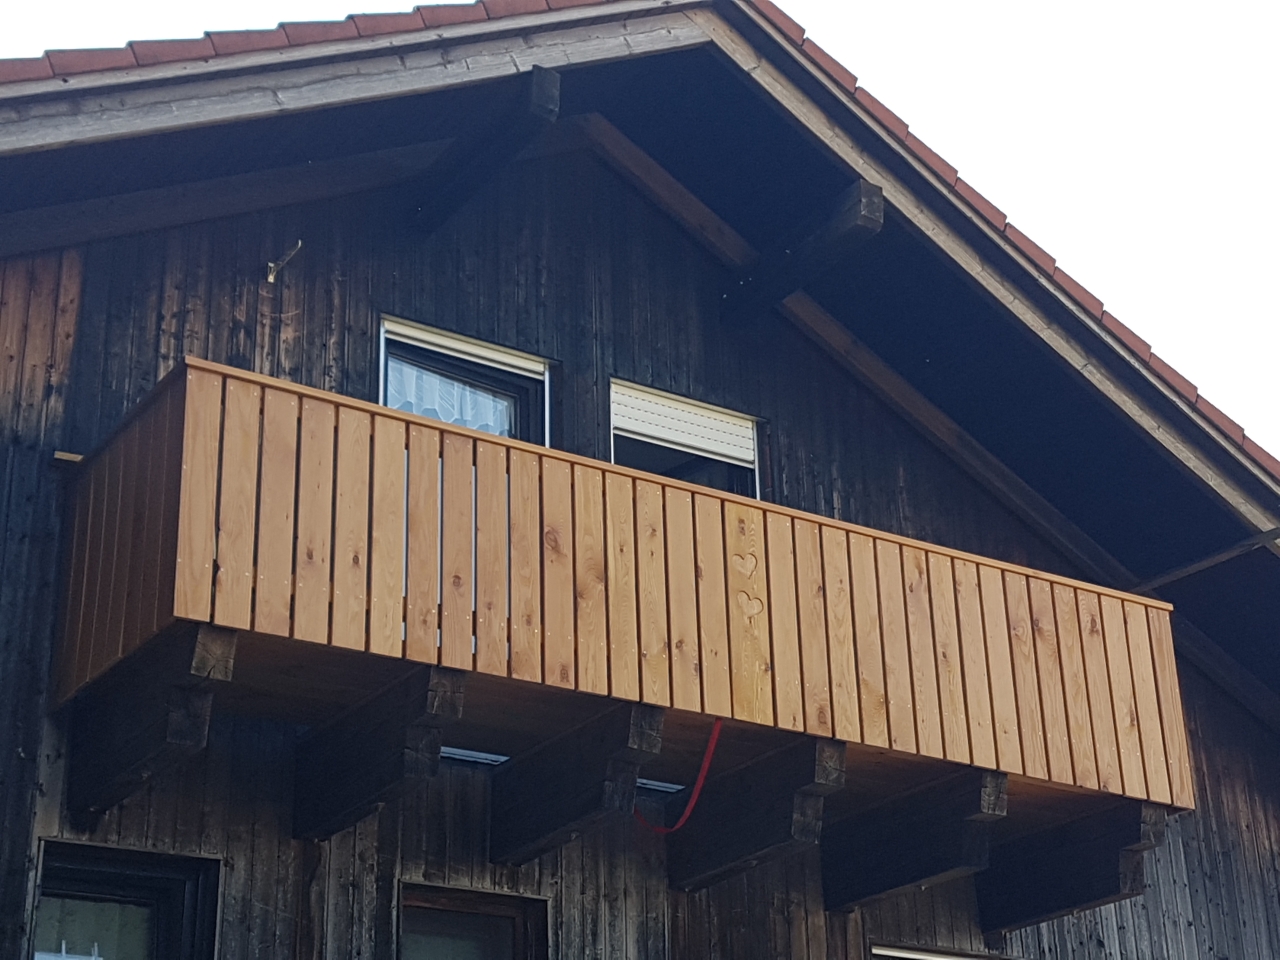 Estrich in der Werkstatt erneuern - Bauanleitung zum Selberbauen -   - Deine Heimwerker Community